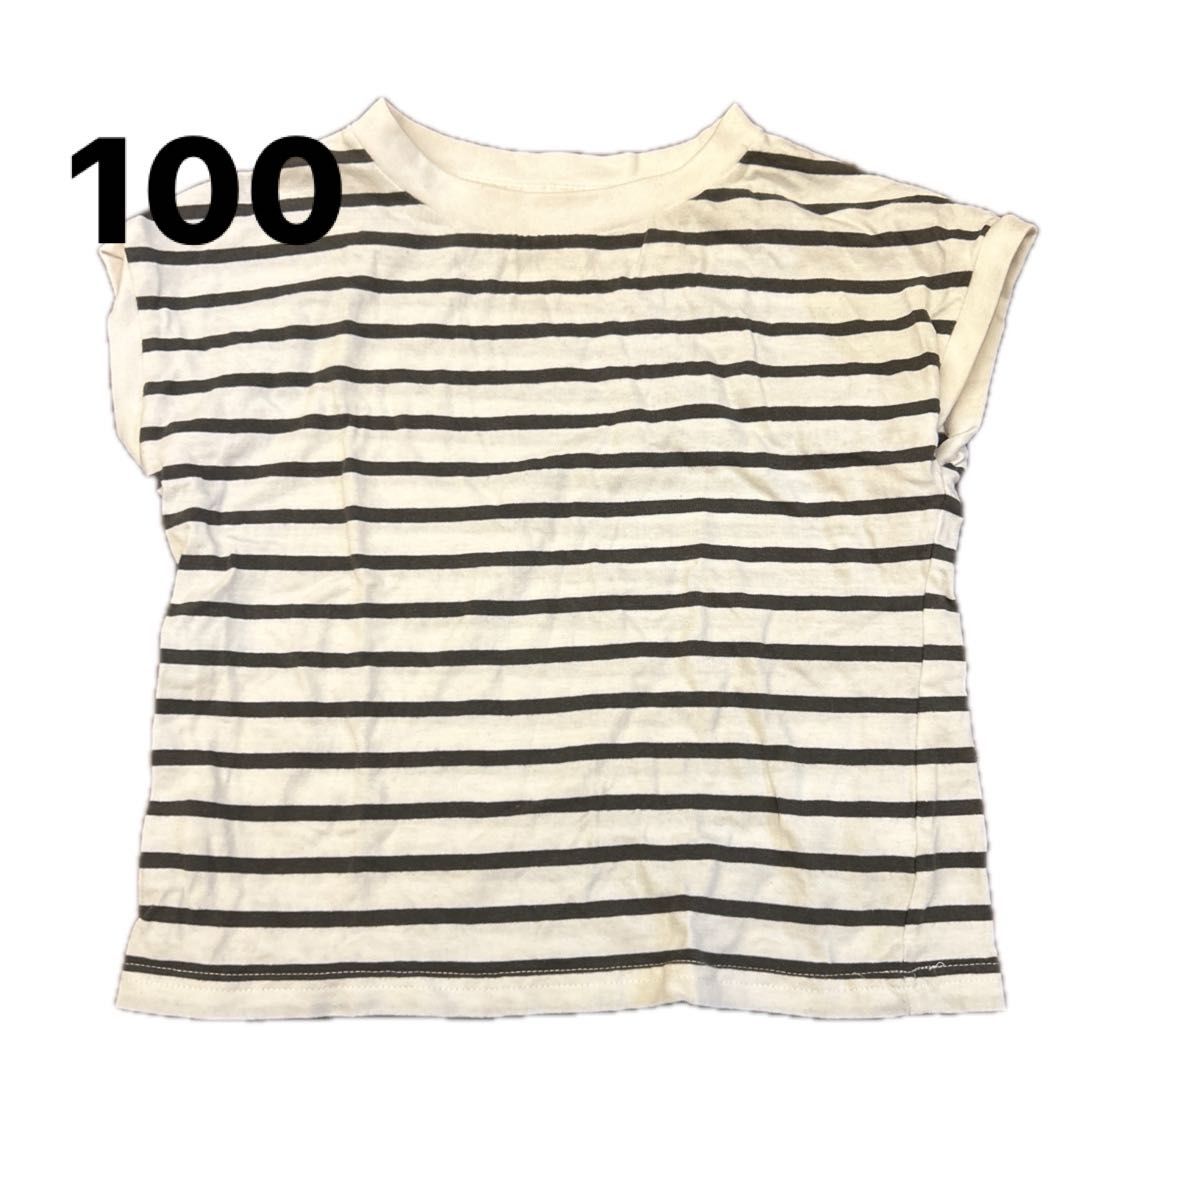 子供服 カットソー Tシャツ ボーダー トップス 半袖 size 100